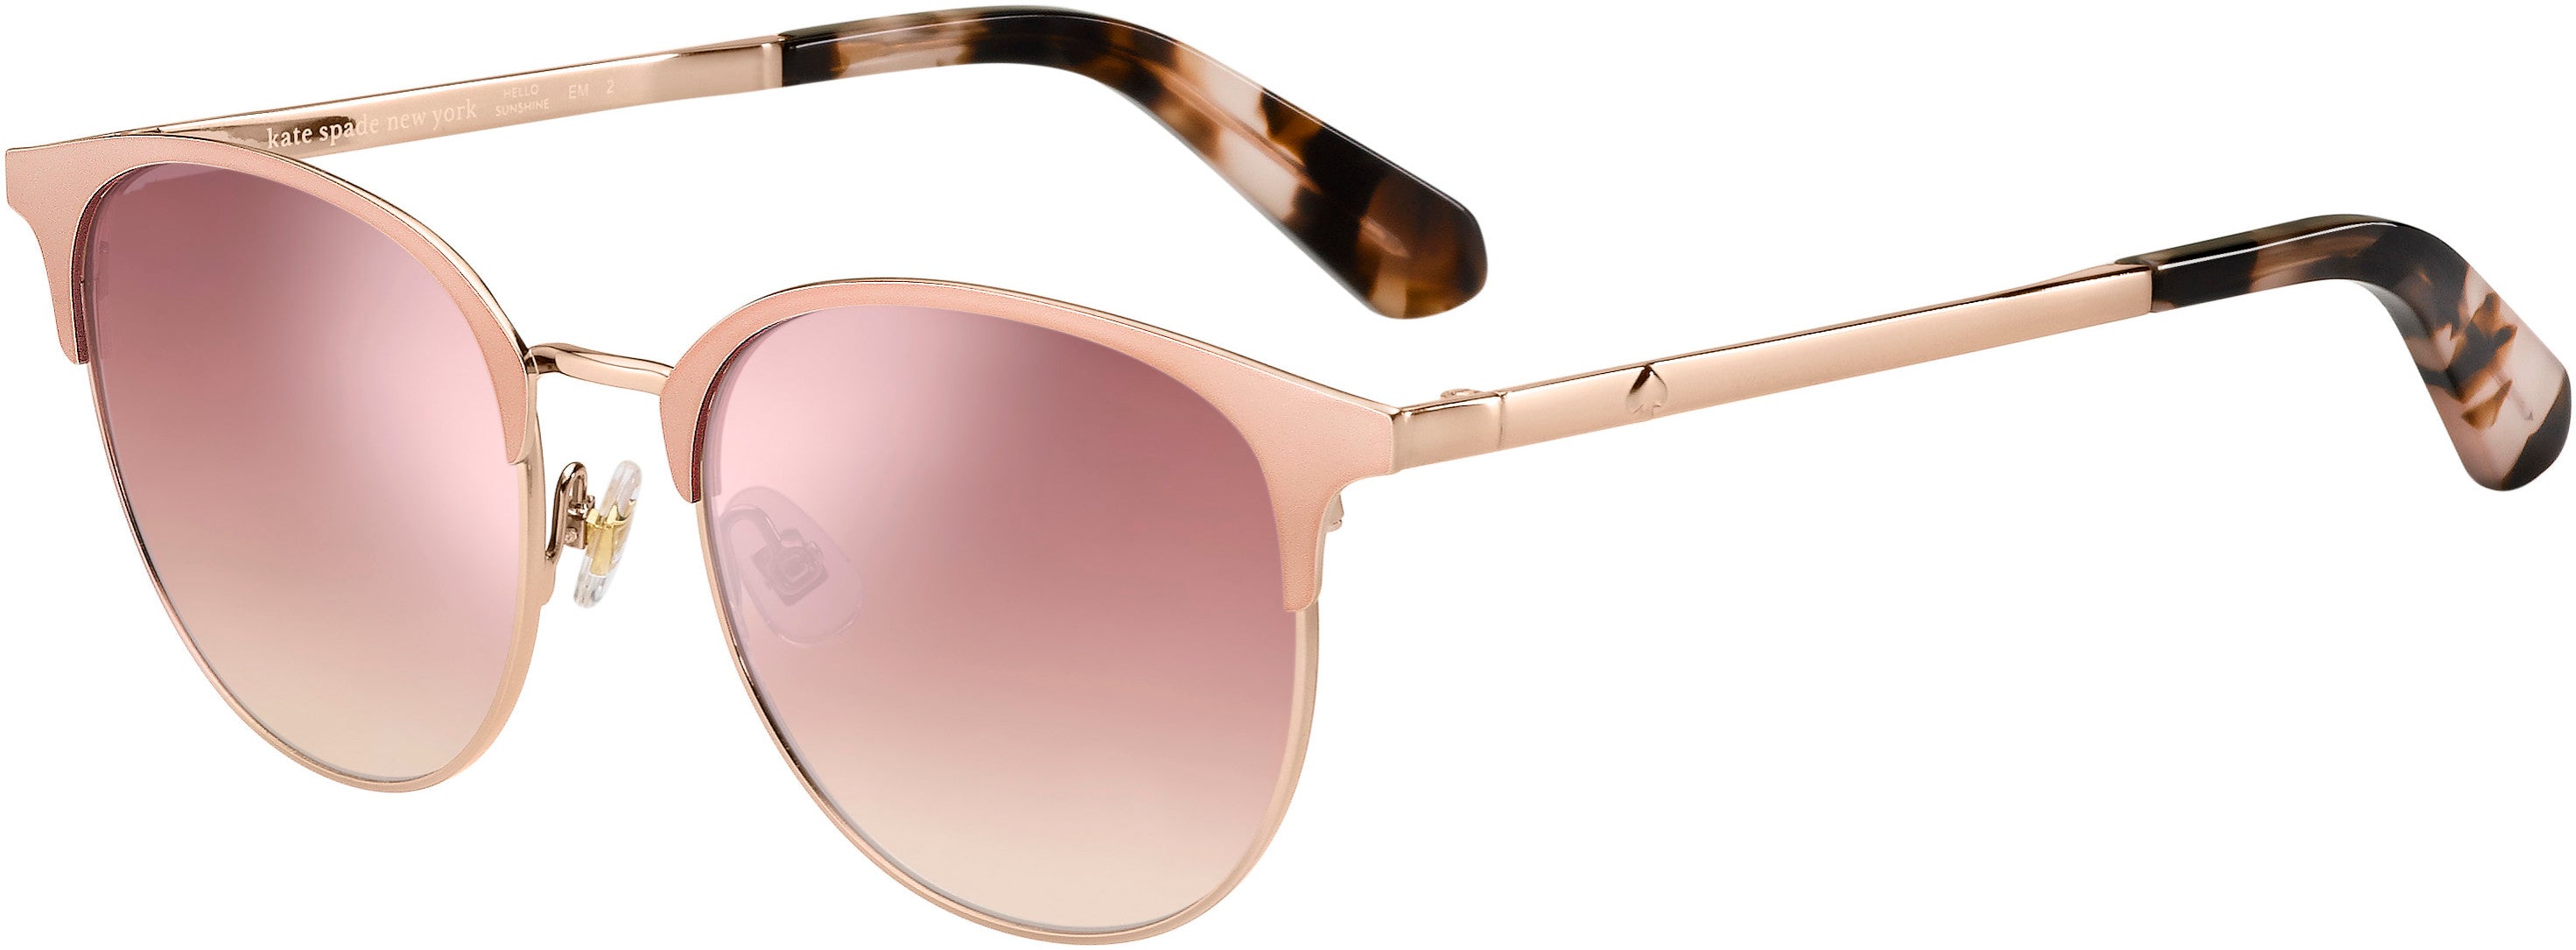 Kate Spade Joelynn/S Cat Eye/butterfly Sunglasses 0HT8-0HT8  Pink Havana (2S Pink Flash Silver)